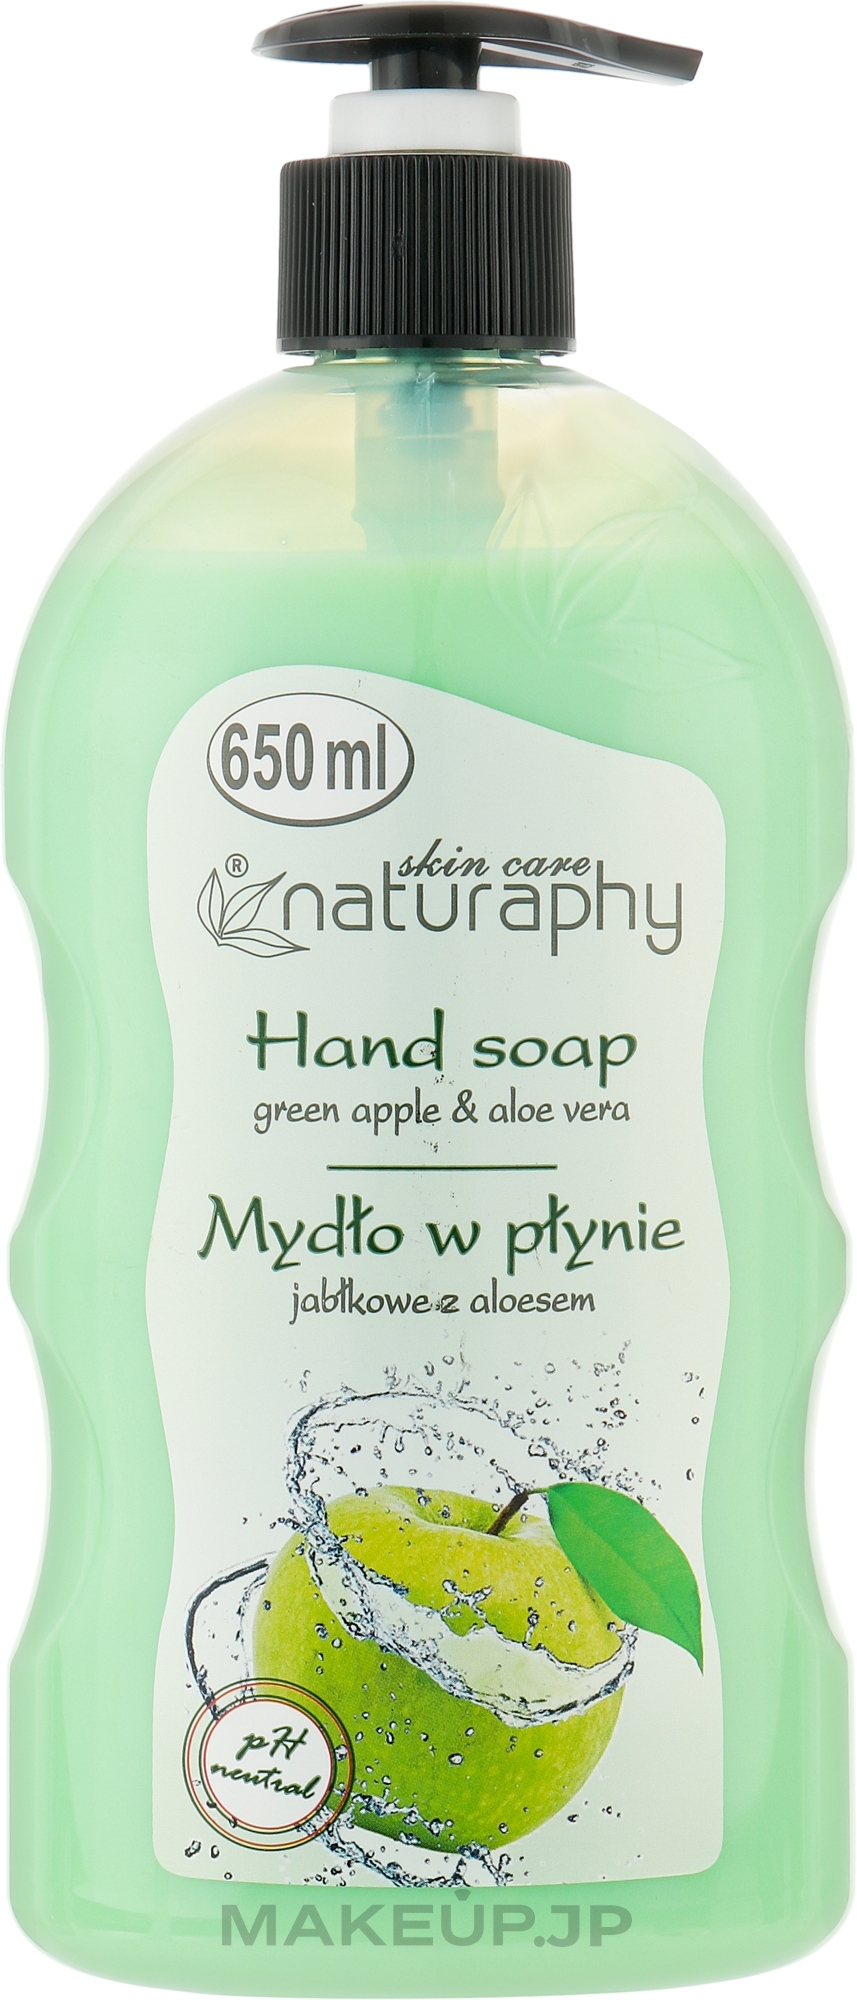 Green Apple & Aloe Vera Liquid Hand Soap - Naturaphy Hand Soap — photo 650 ml